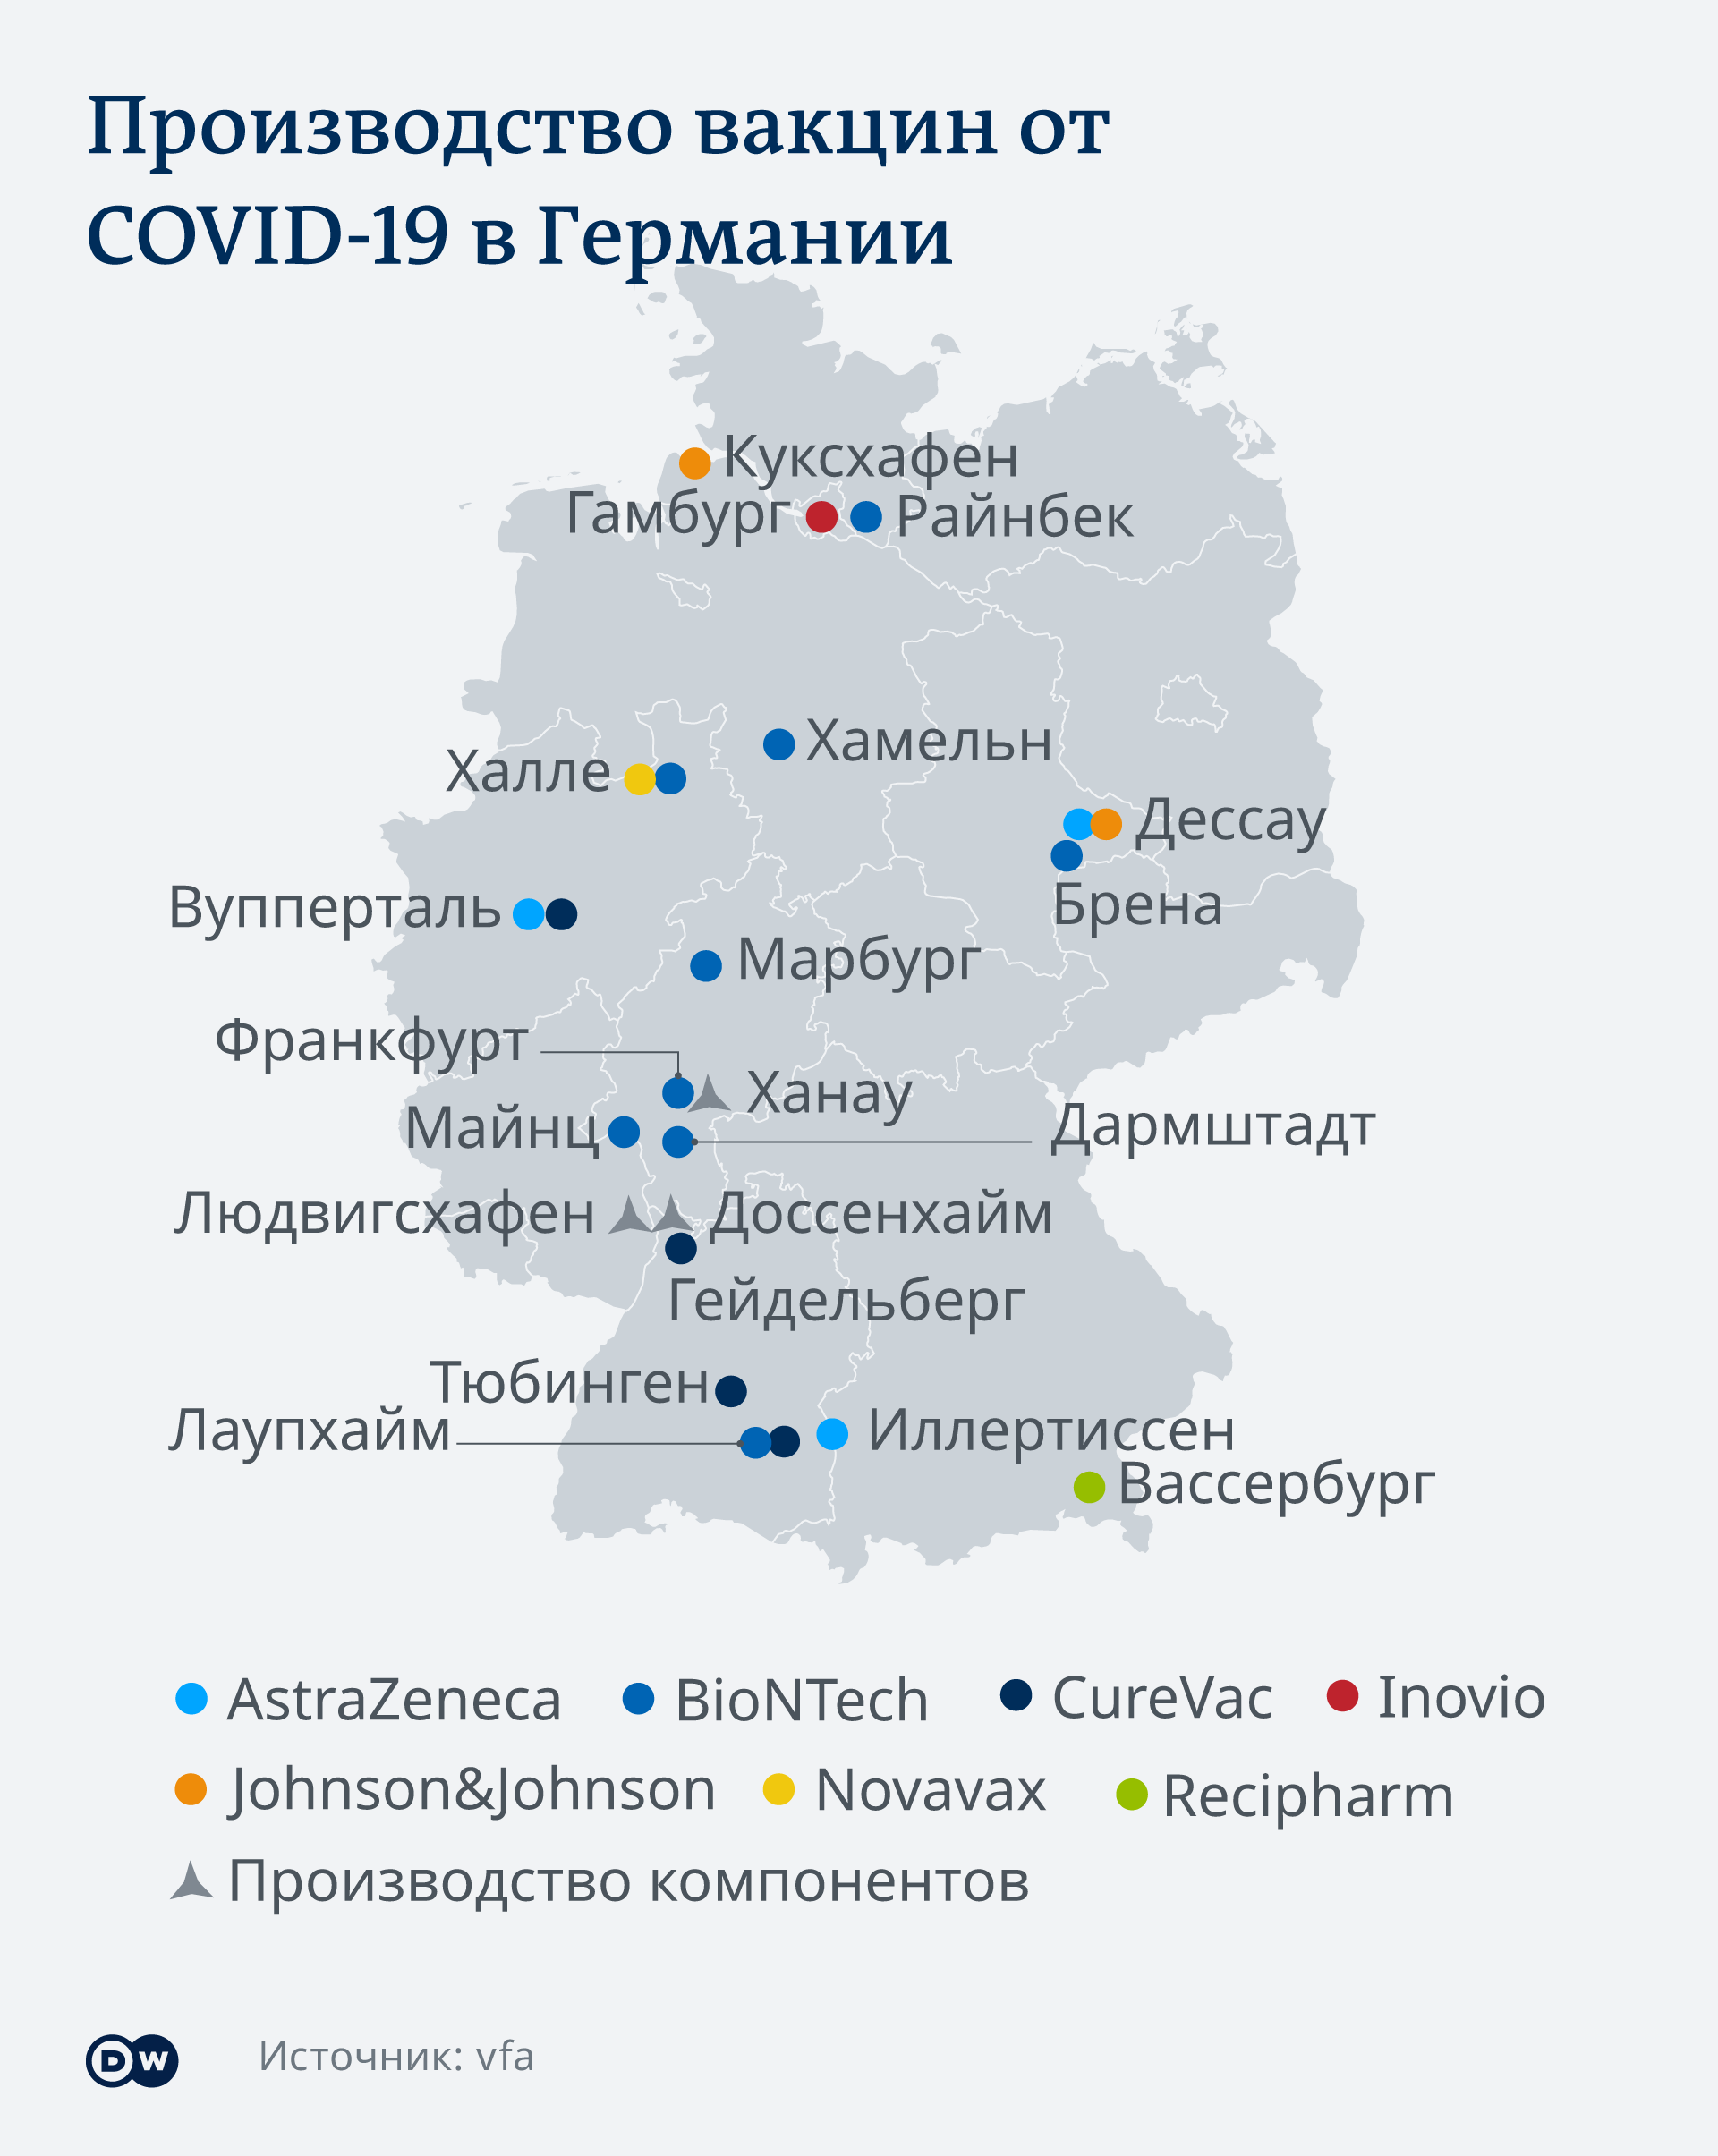 Инфографика Производство вакцин от Covid-19 в Германии